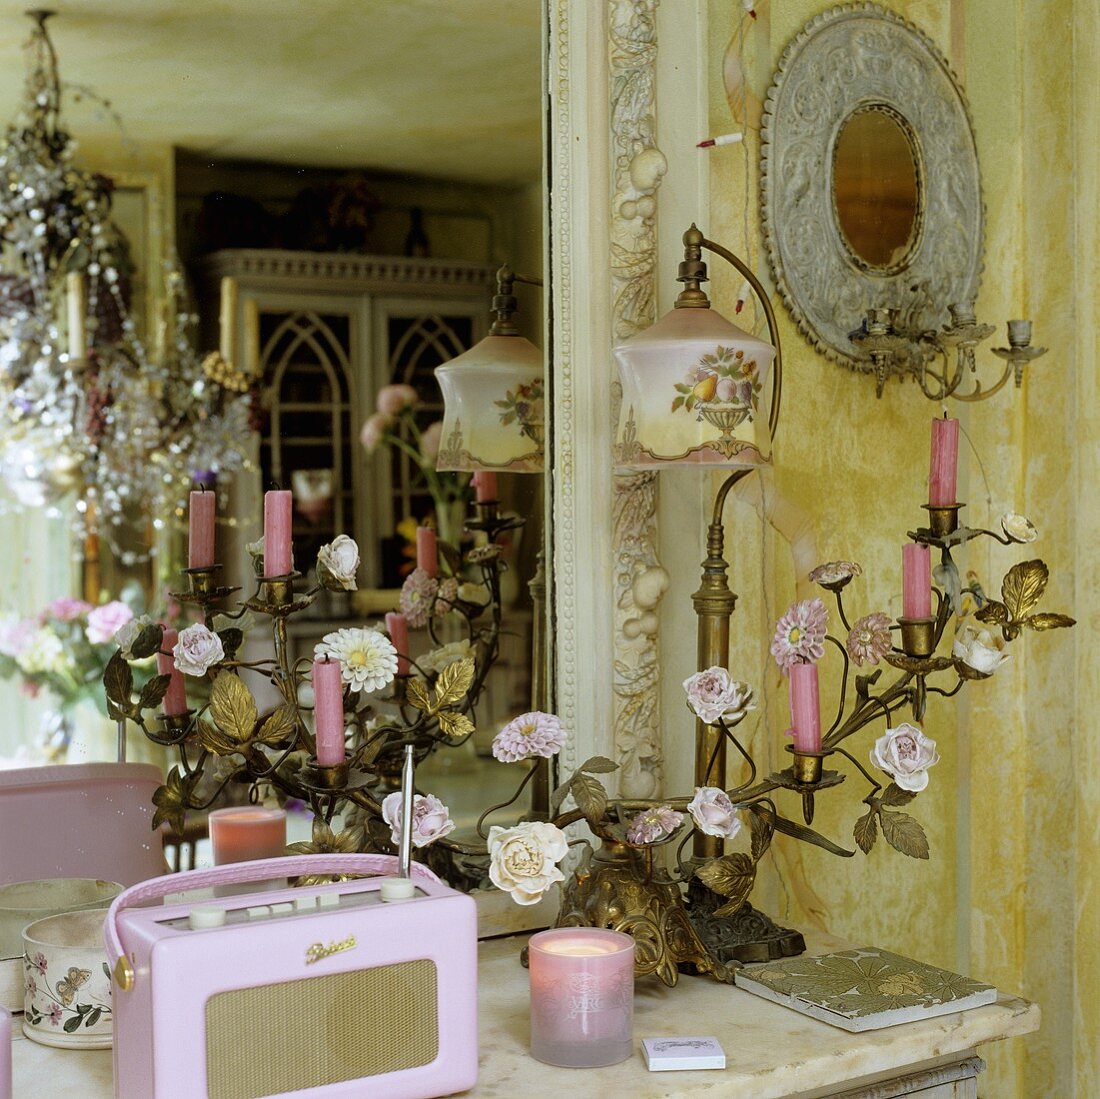 Vergoldeter Kerzenleuchter, antike Tischlampe und rosa Kofferradio vor Wandspiegel